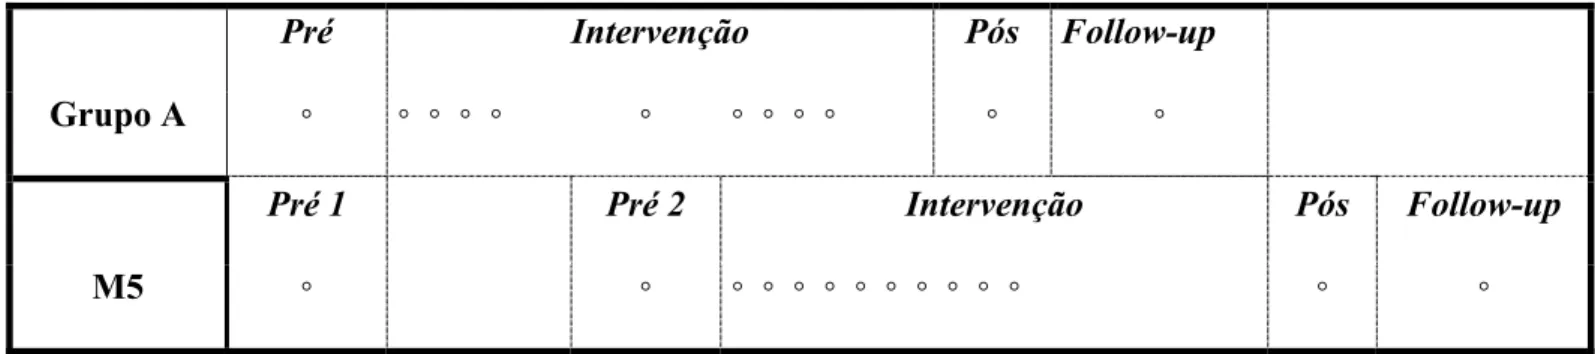 Figura 1: Diagrama do Delineamento Experimental da Pesquisa 